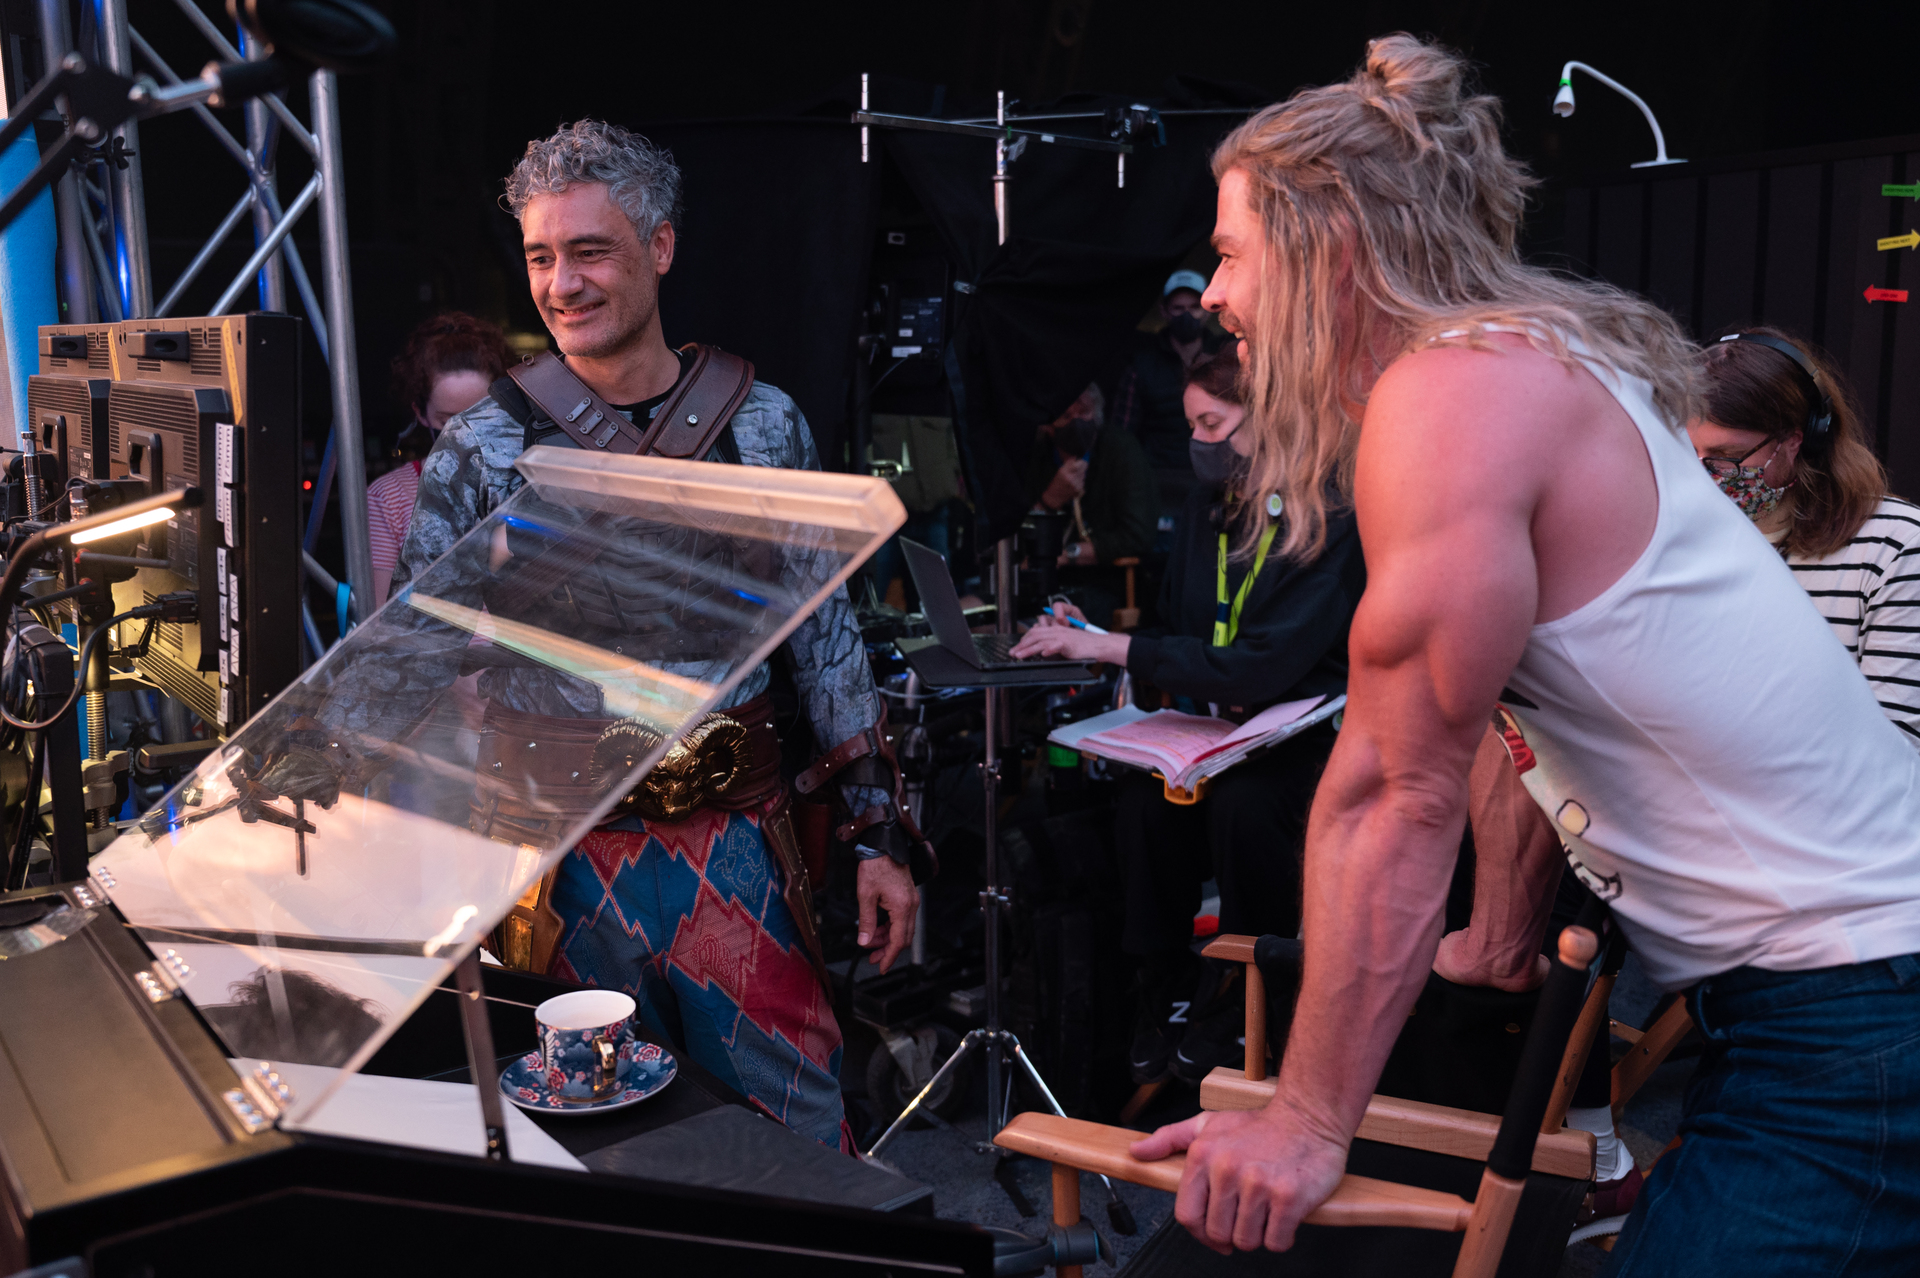 Taika Waititi Reveals He Made 'Thor: Ragnarok' to 'Feed These